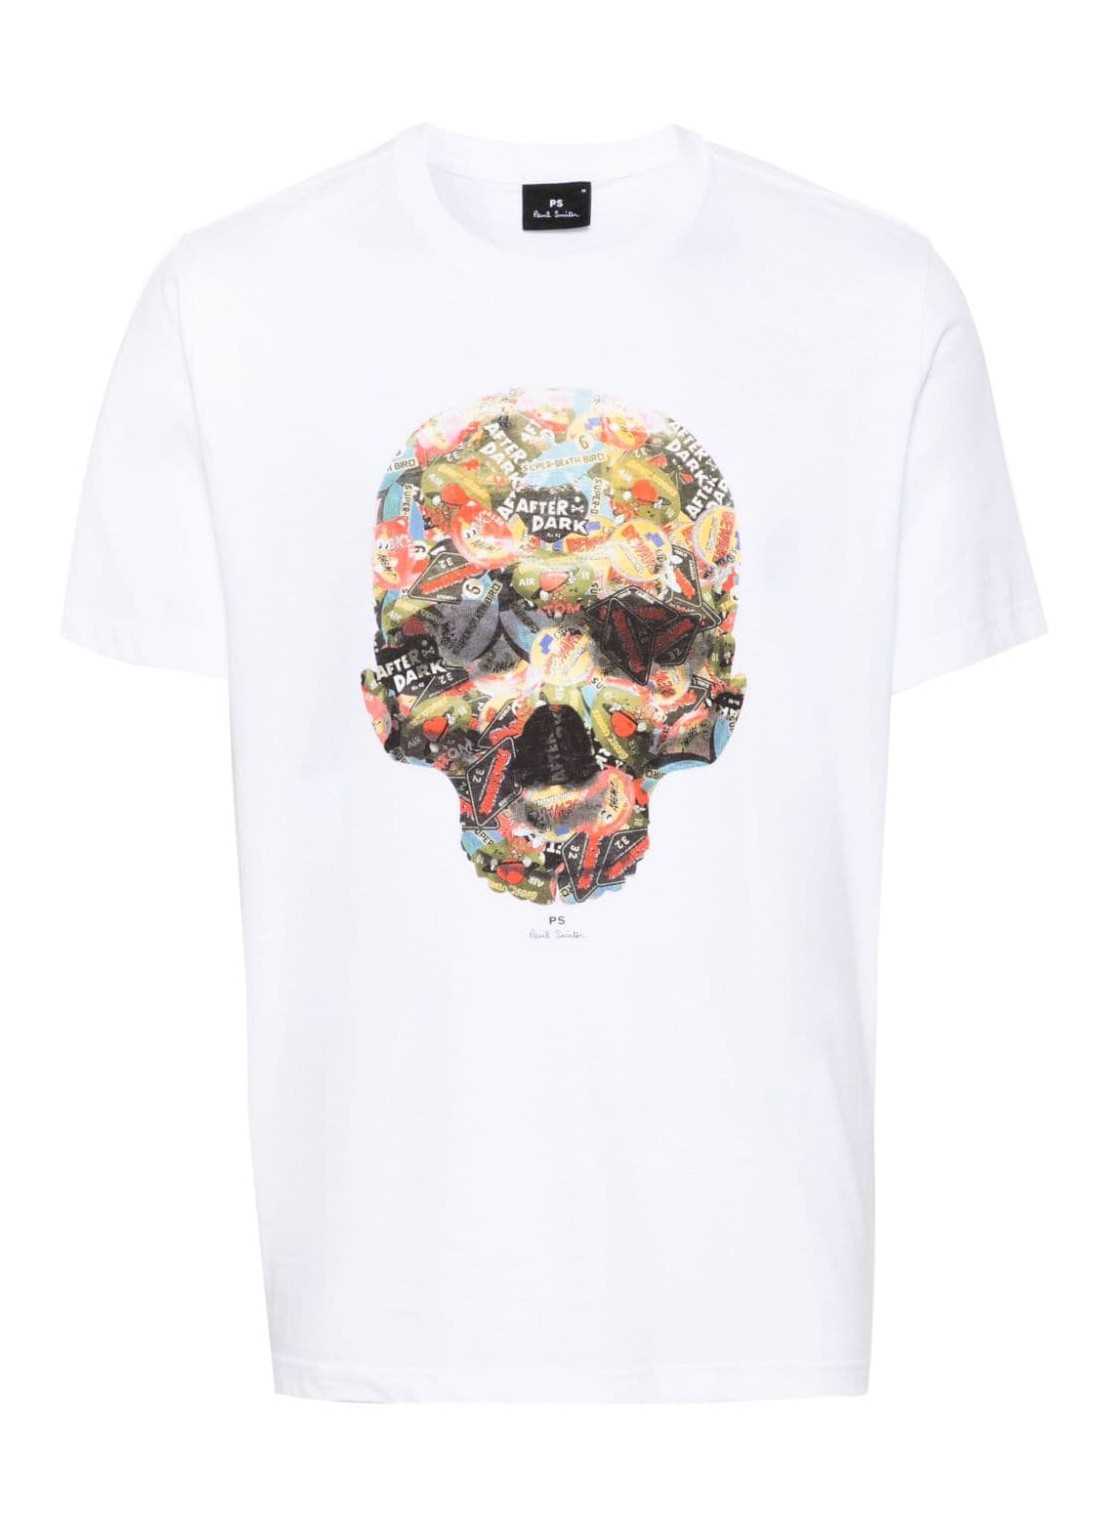 Camiseta ps t-shirt man mens reg fit t shirt skull sticker m2r011rmp4437 01 talla blanco
 